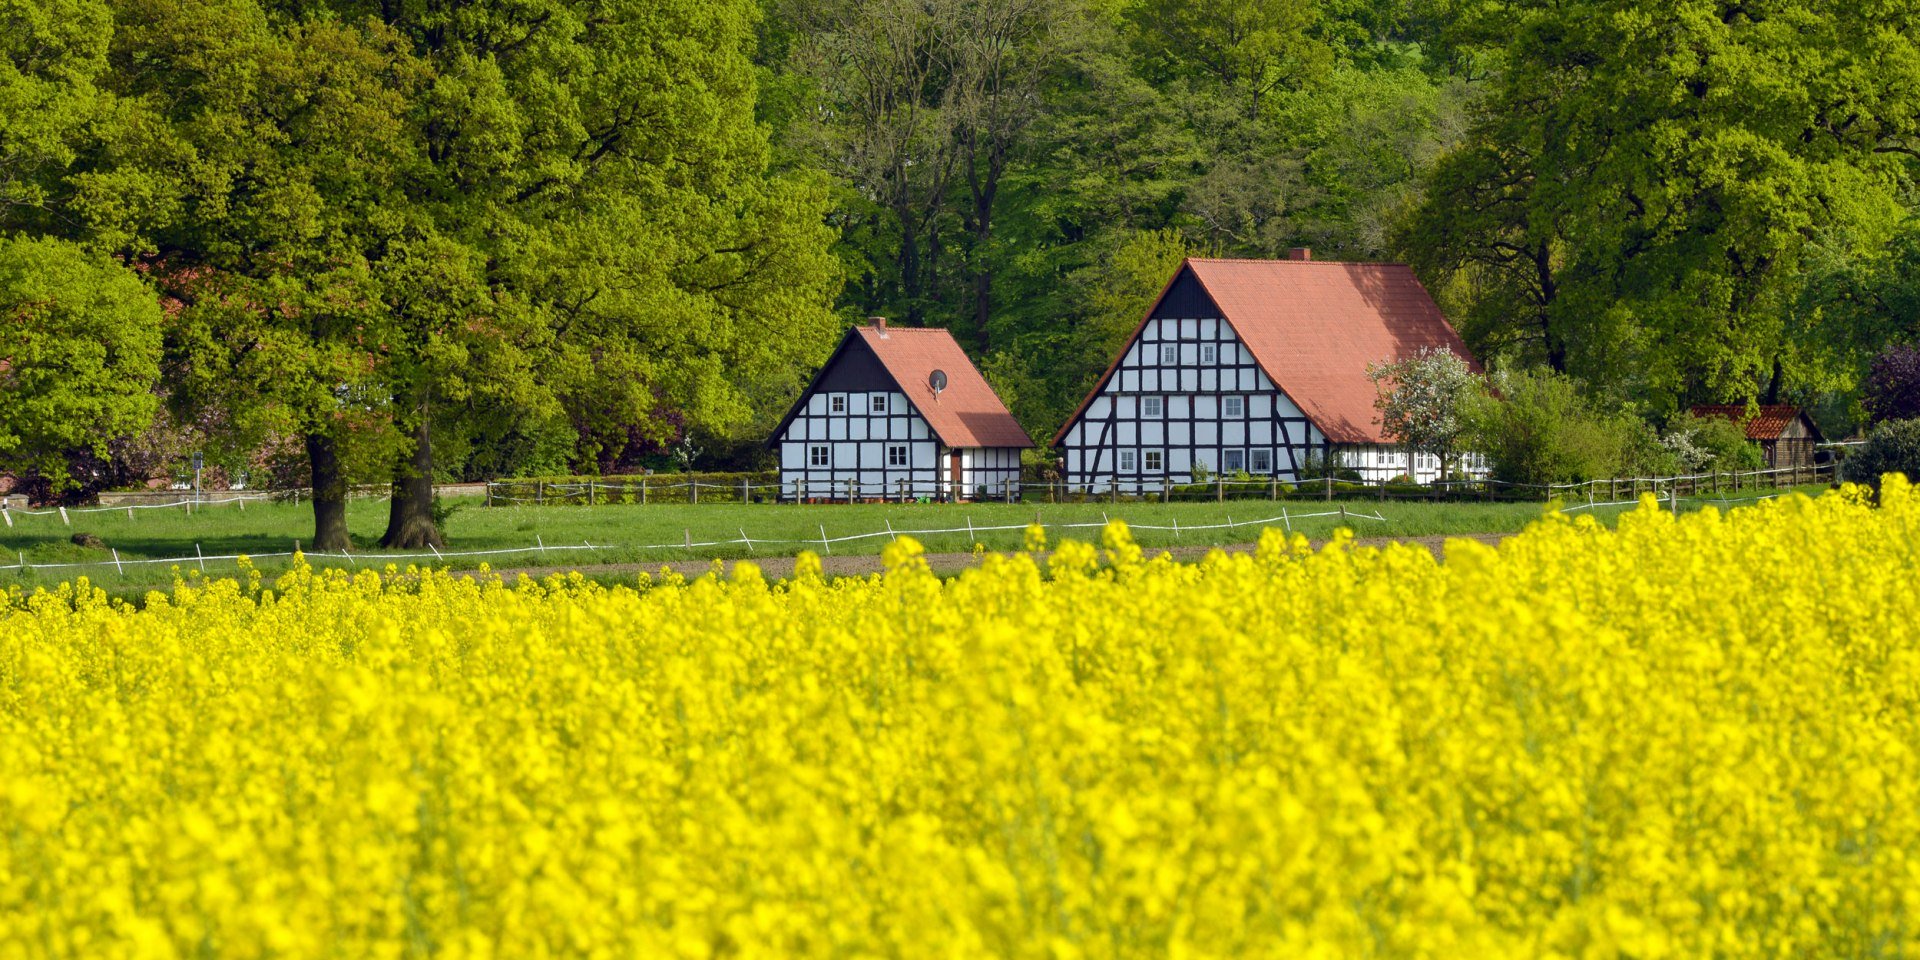 Hügelige Landschaft mit Fachwerkhäusern am Wiehengebirge bei Ostercappeln-Venne, © Tourismusverband Osnabrücker Land / Dieter Schinner